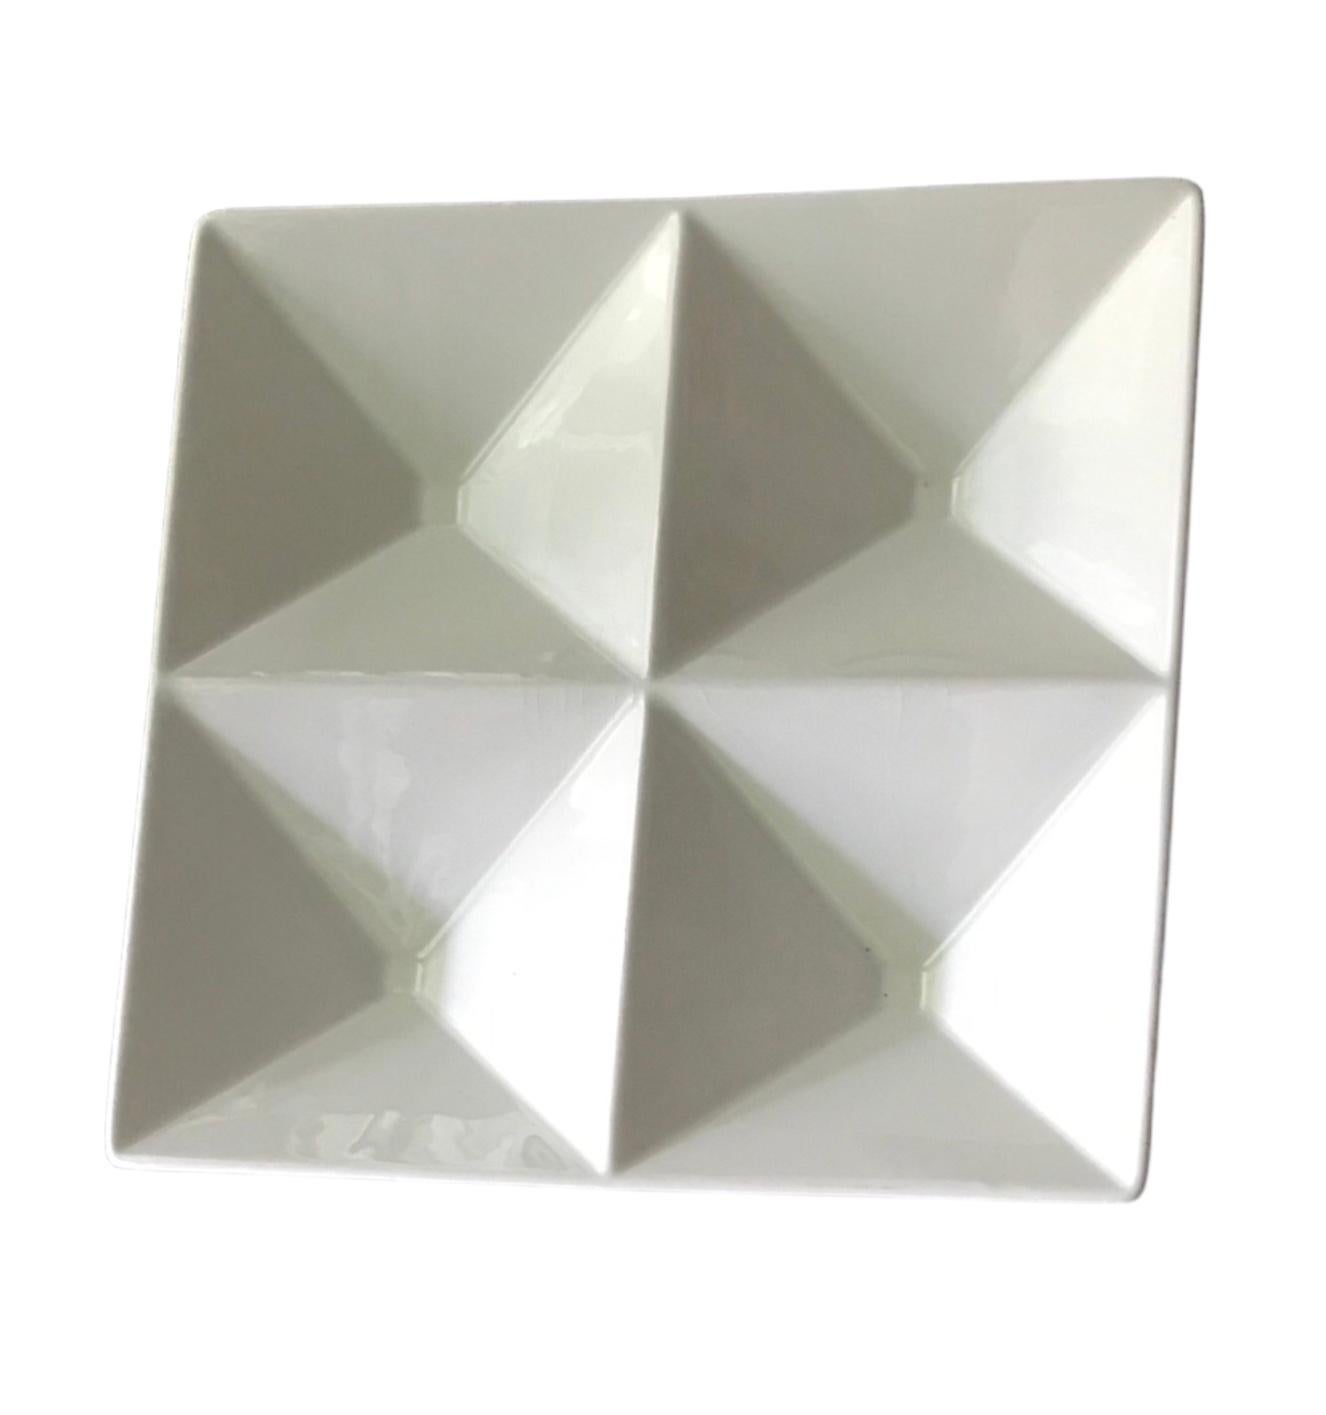 Plateau Mid Design Modern créé en 1957 par Kaj Franck (1911-1989), le plateau Origami design for Arabia (aujourd'hui propriété de iitala) est intemporel avec son style lisse et géométrique Space Age Modern. Le design des quatre compartiments à